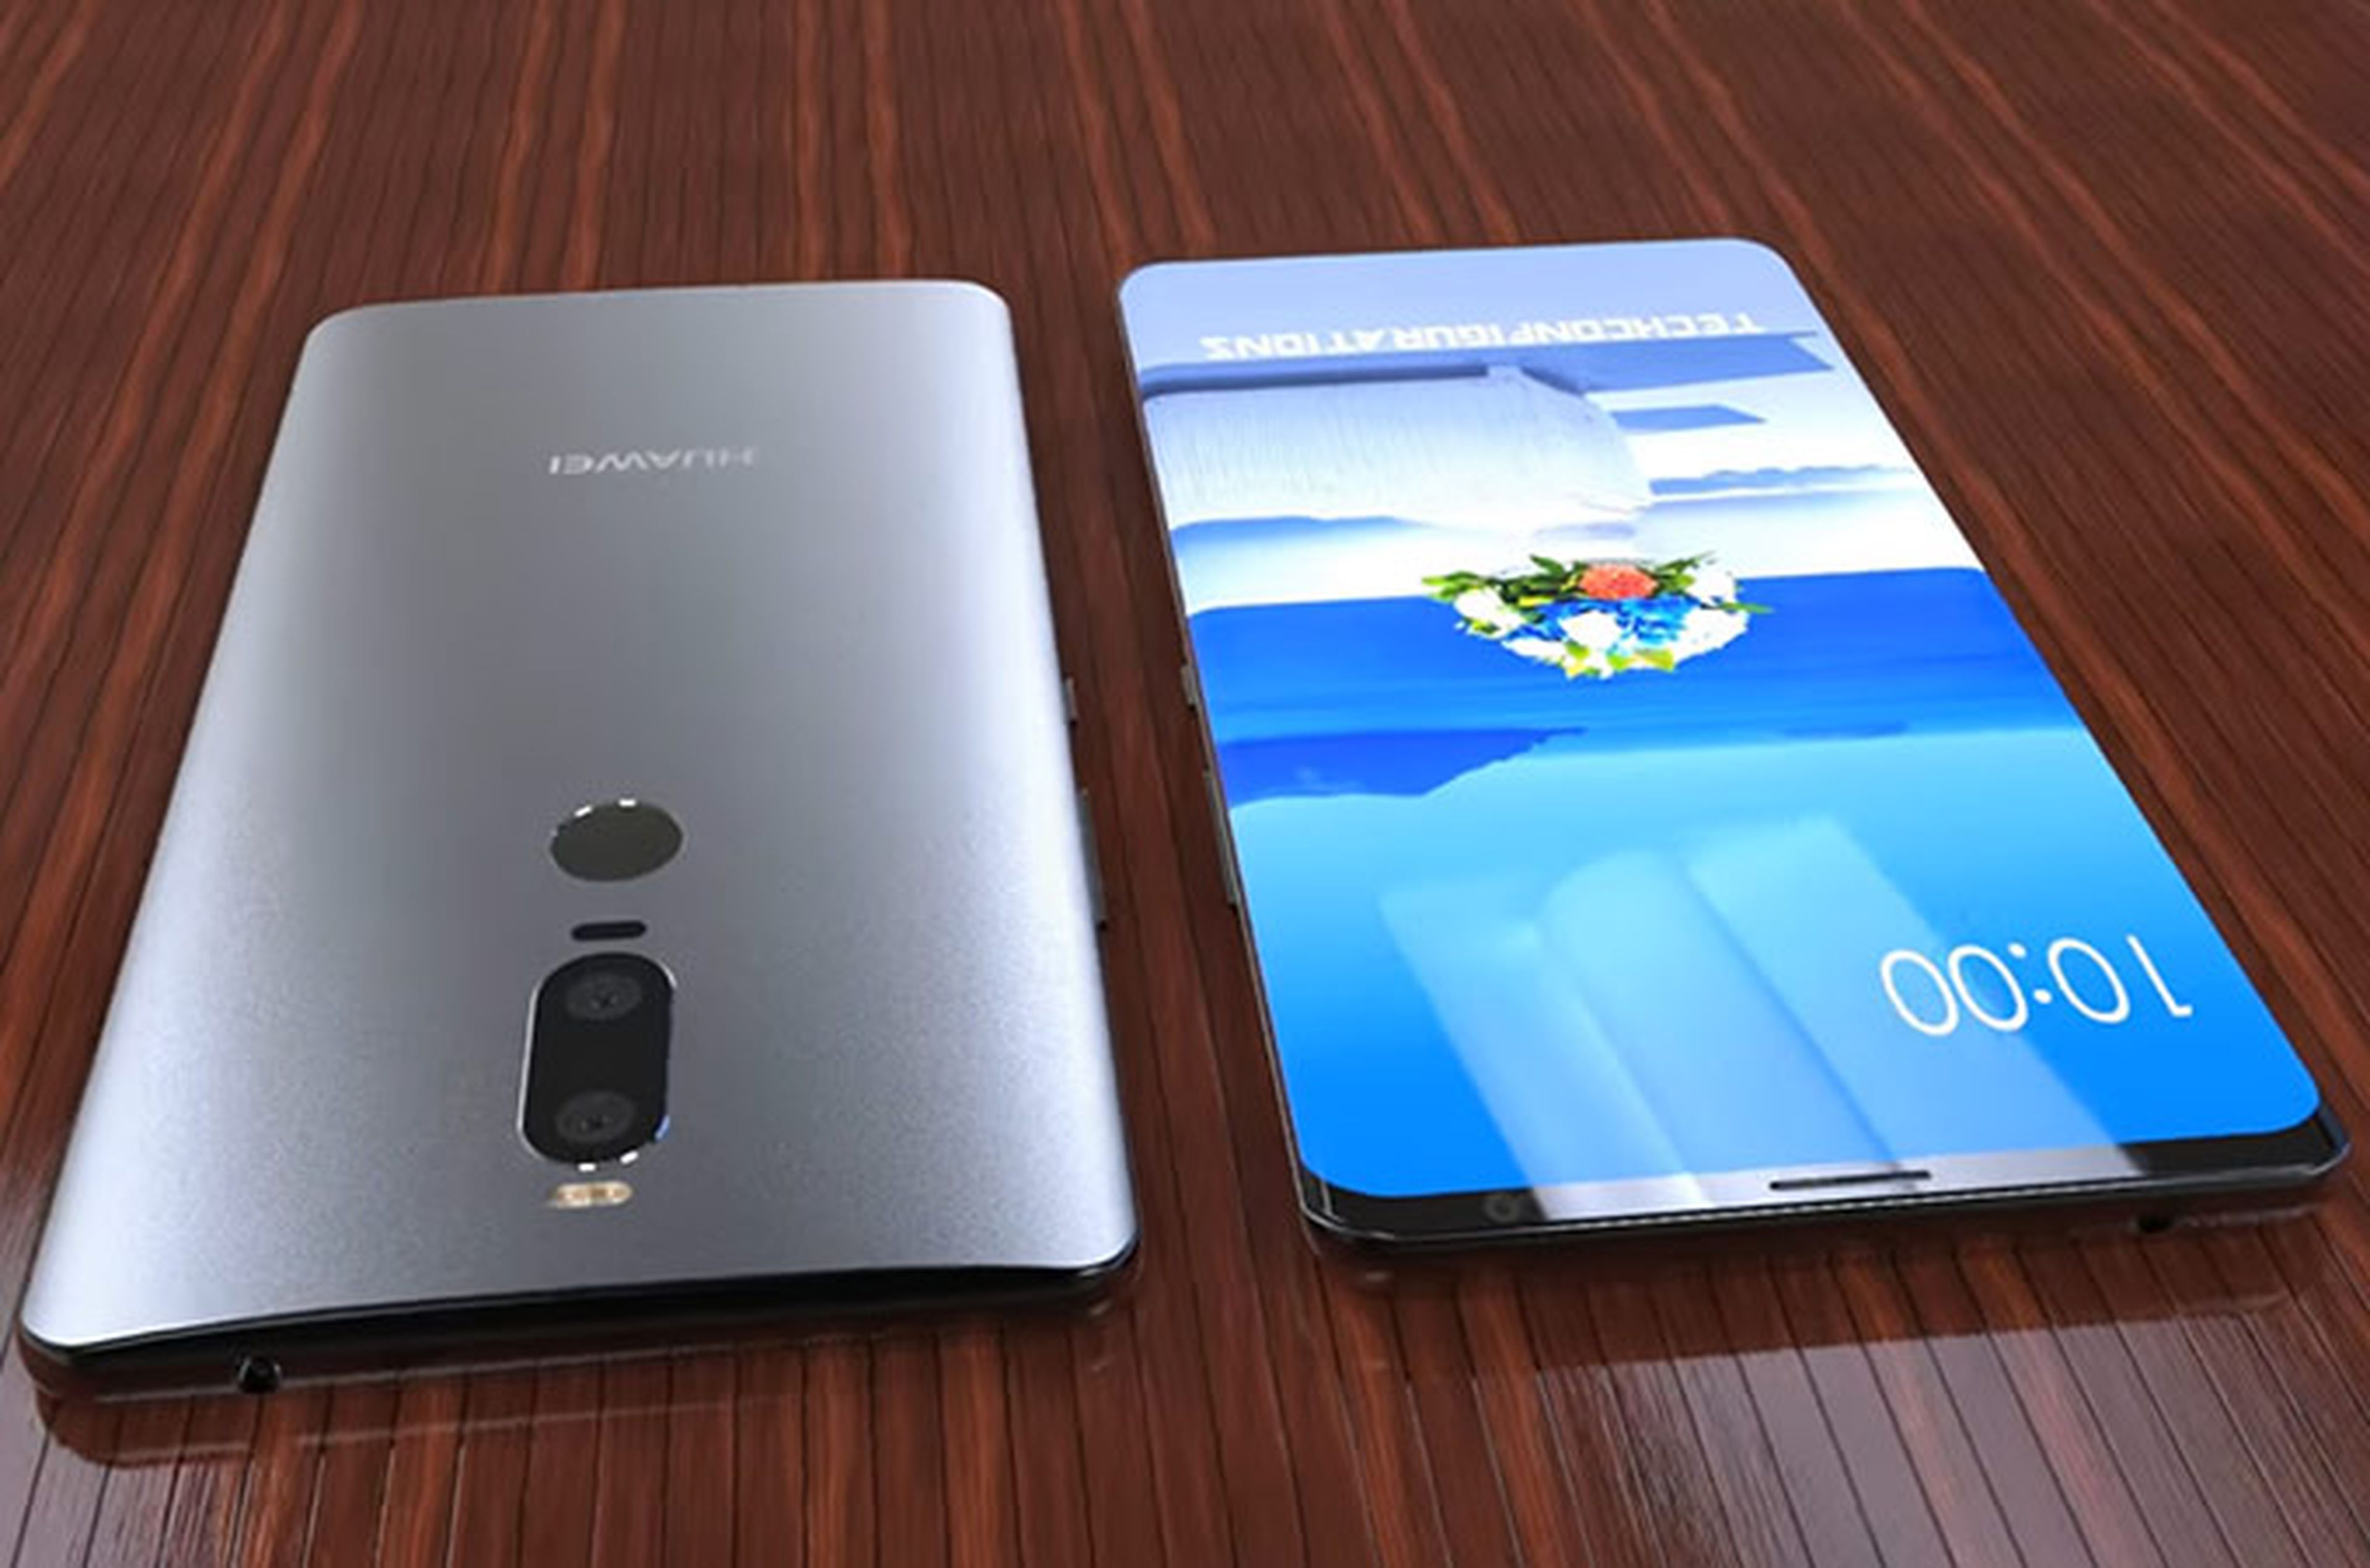 Huawei revela las características técnicas del Mate 10 para superar al iPhone 8